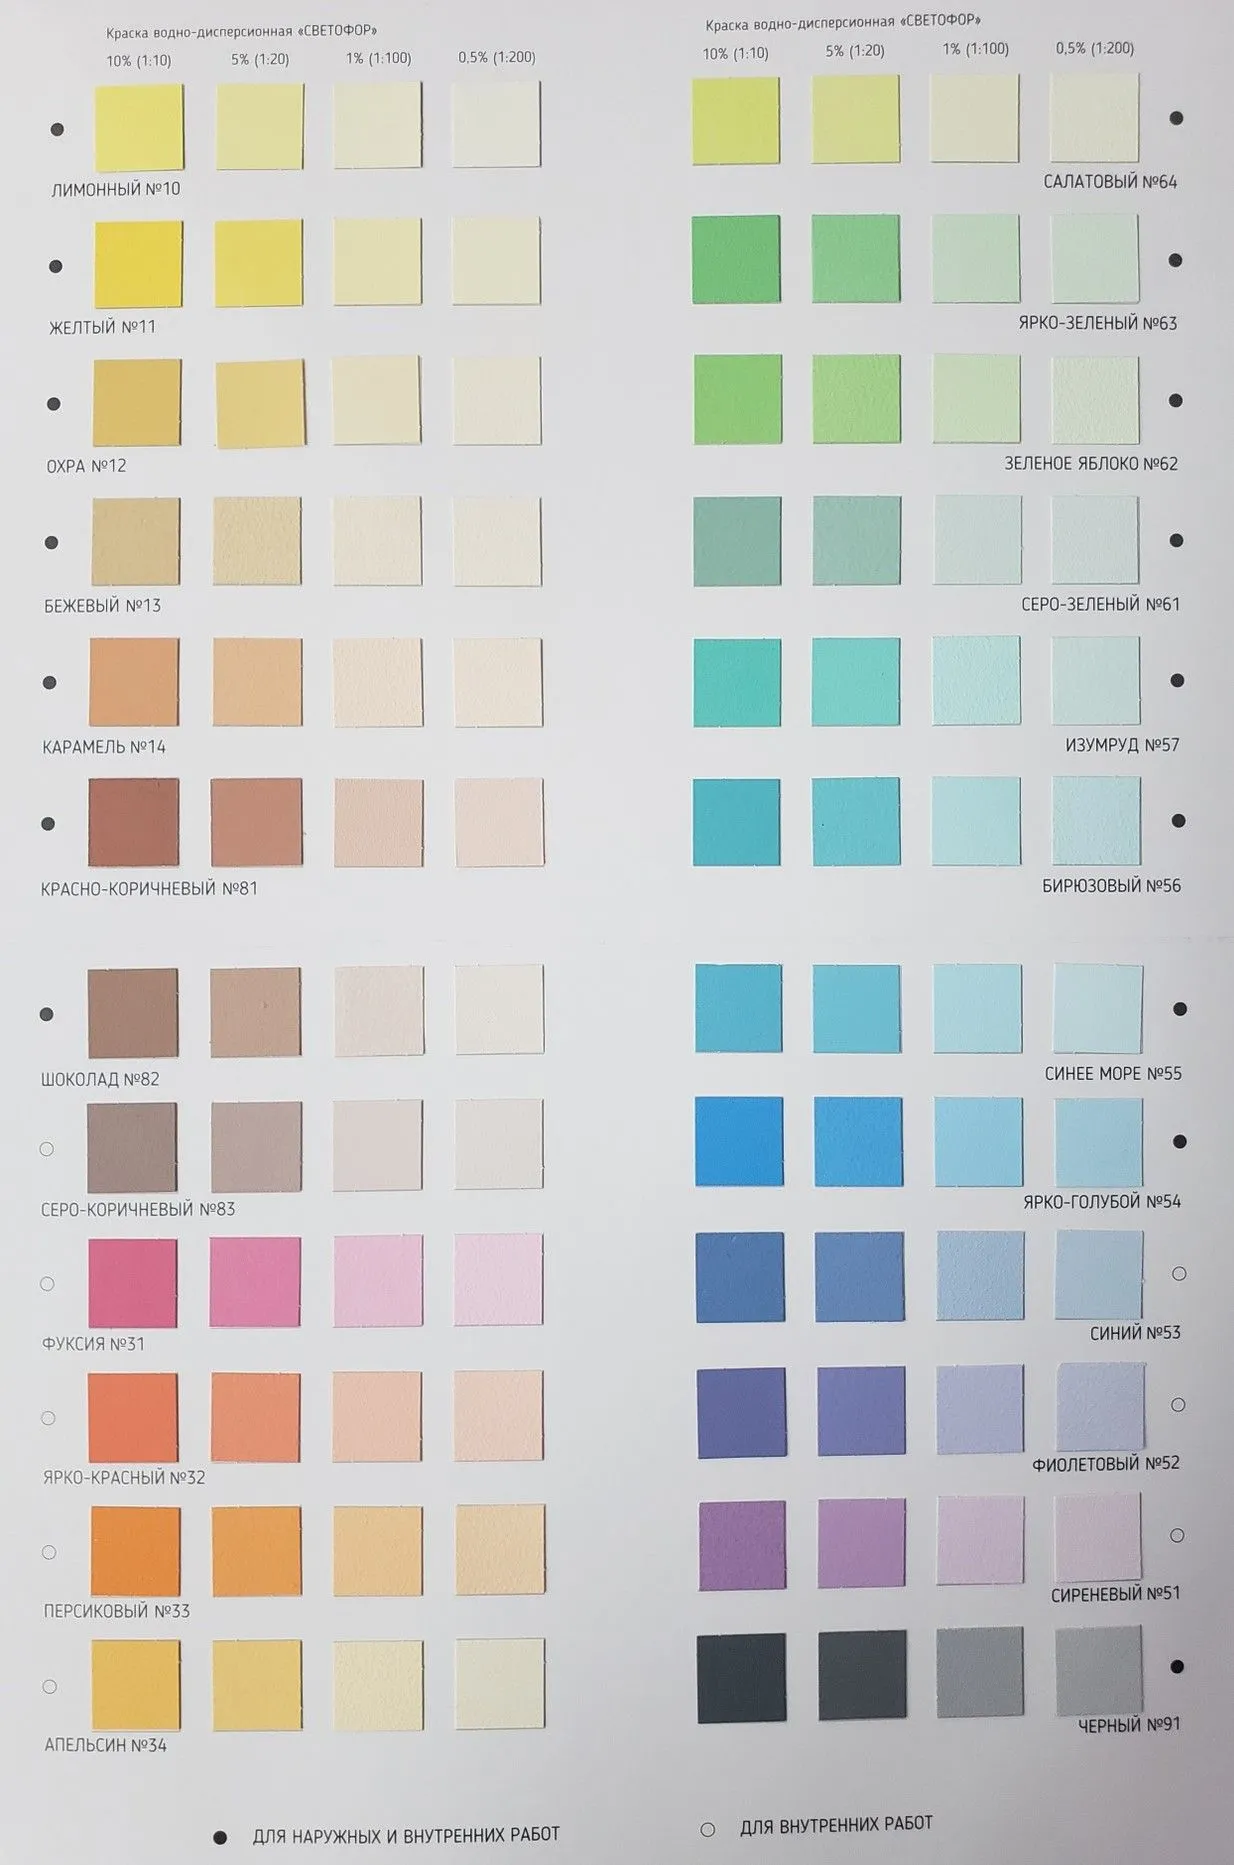 Roomcolor — онлайн-инструмент подбора цвета стен